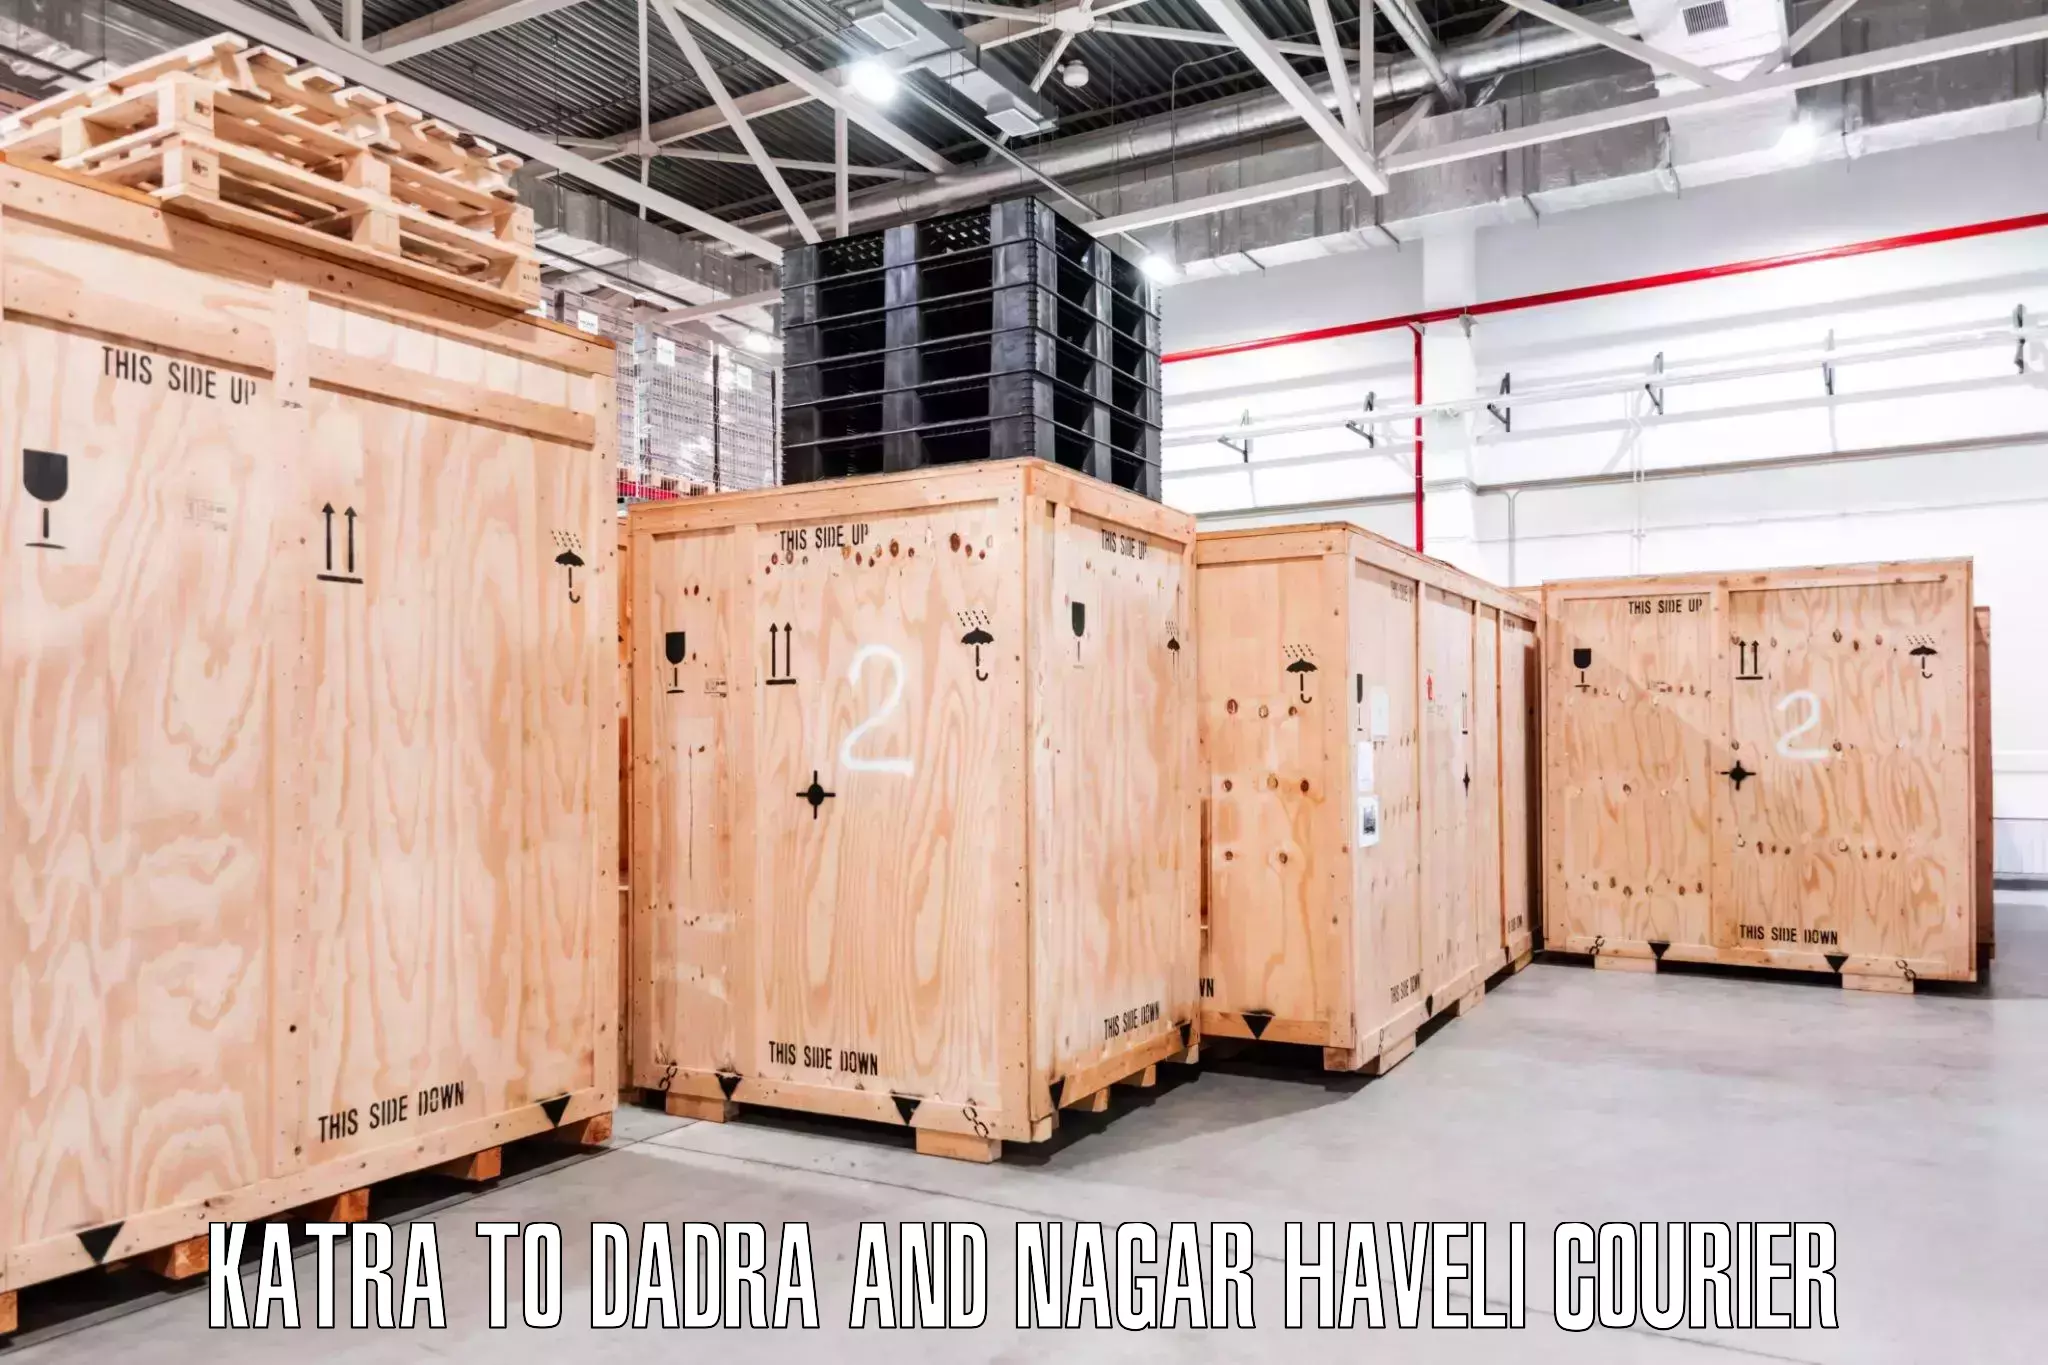 Furniture transport experts Katra to Dadra and Nagar Haveli